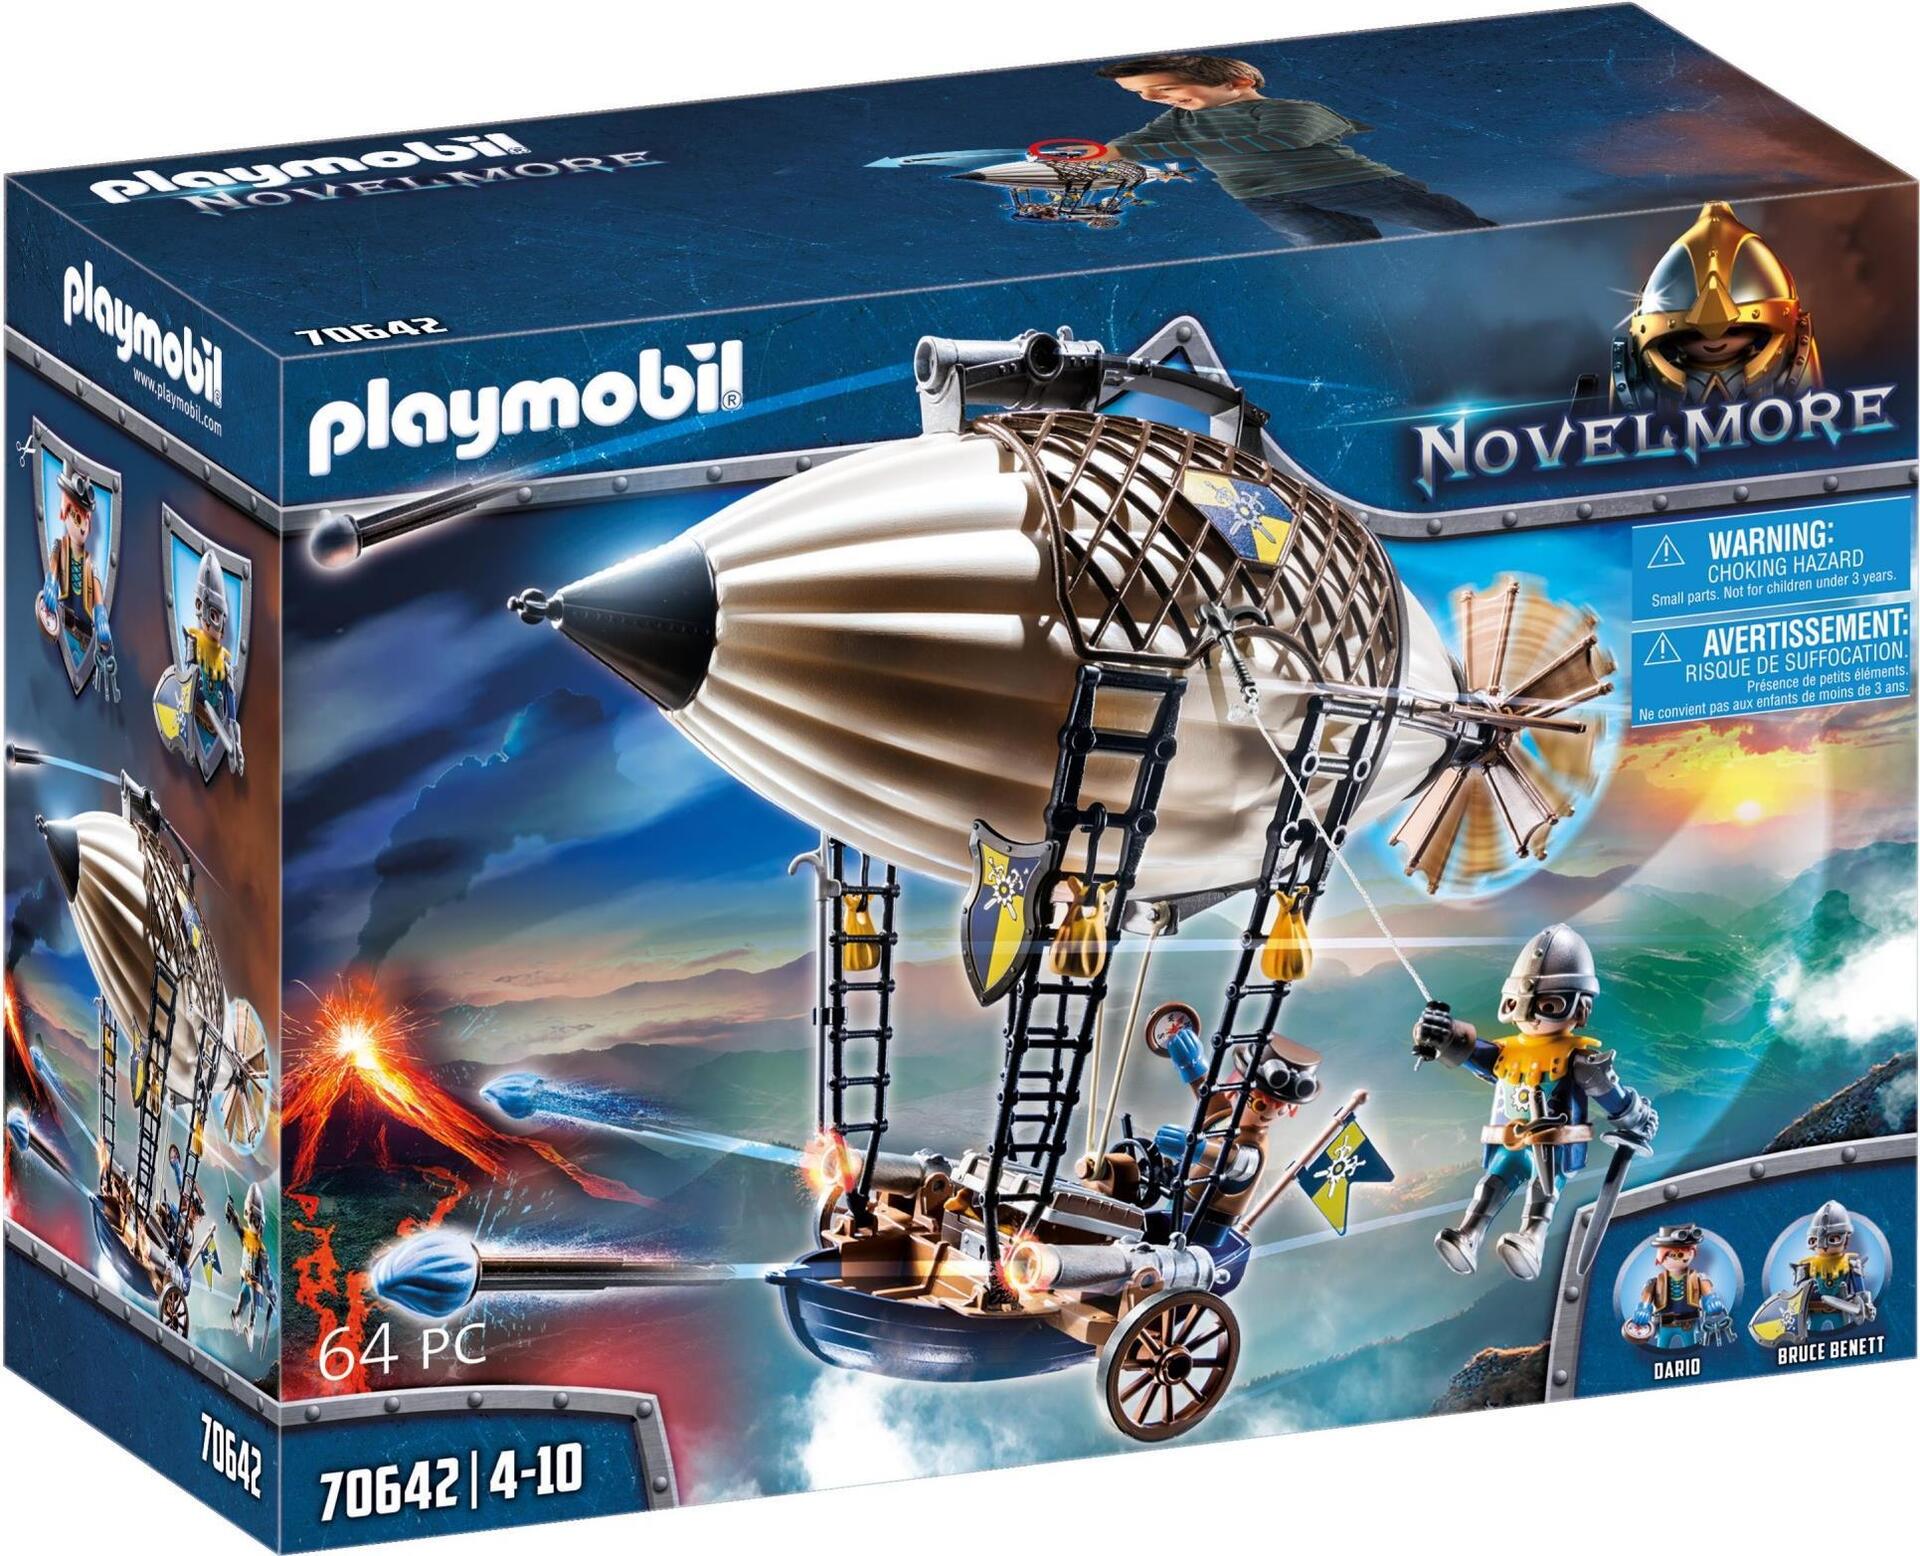 Playmobil Novelmore Darios Zeppelin (70642)